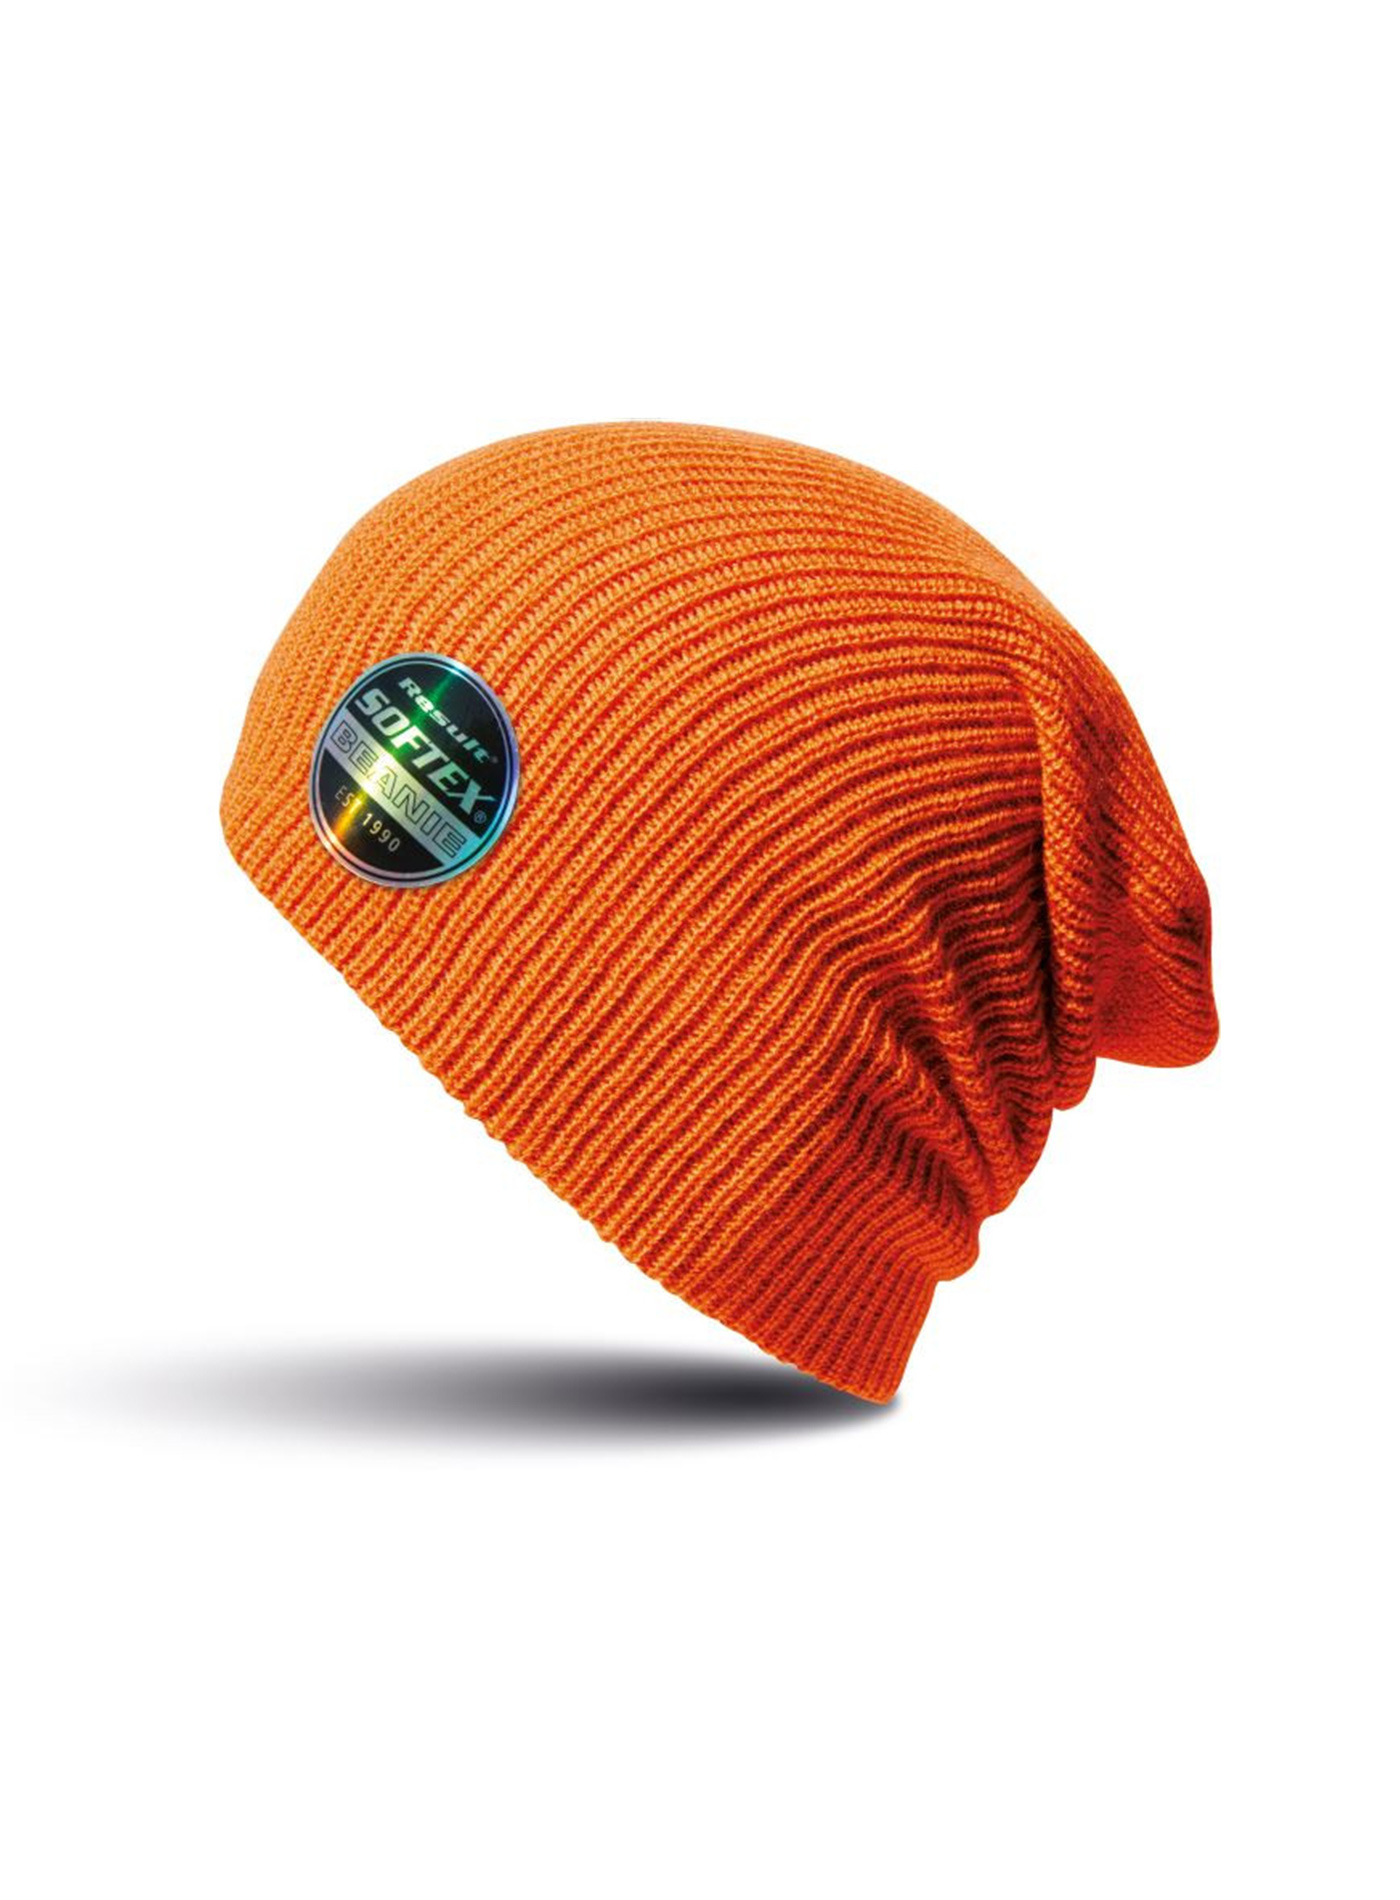 Čepice Result headwear softex beanie - Oranžová univerzal